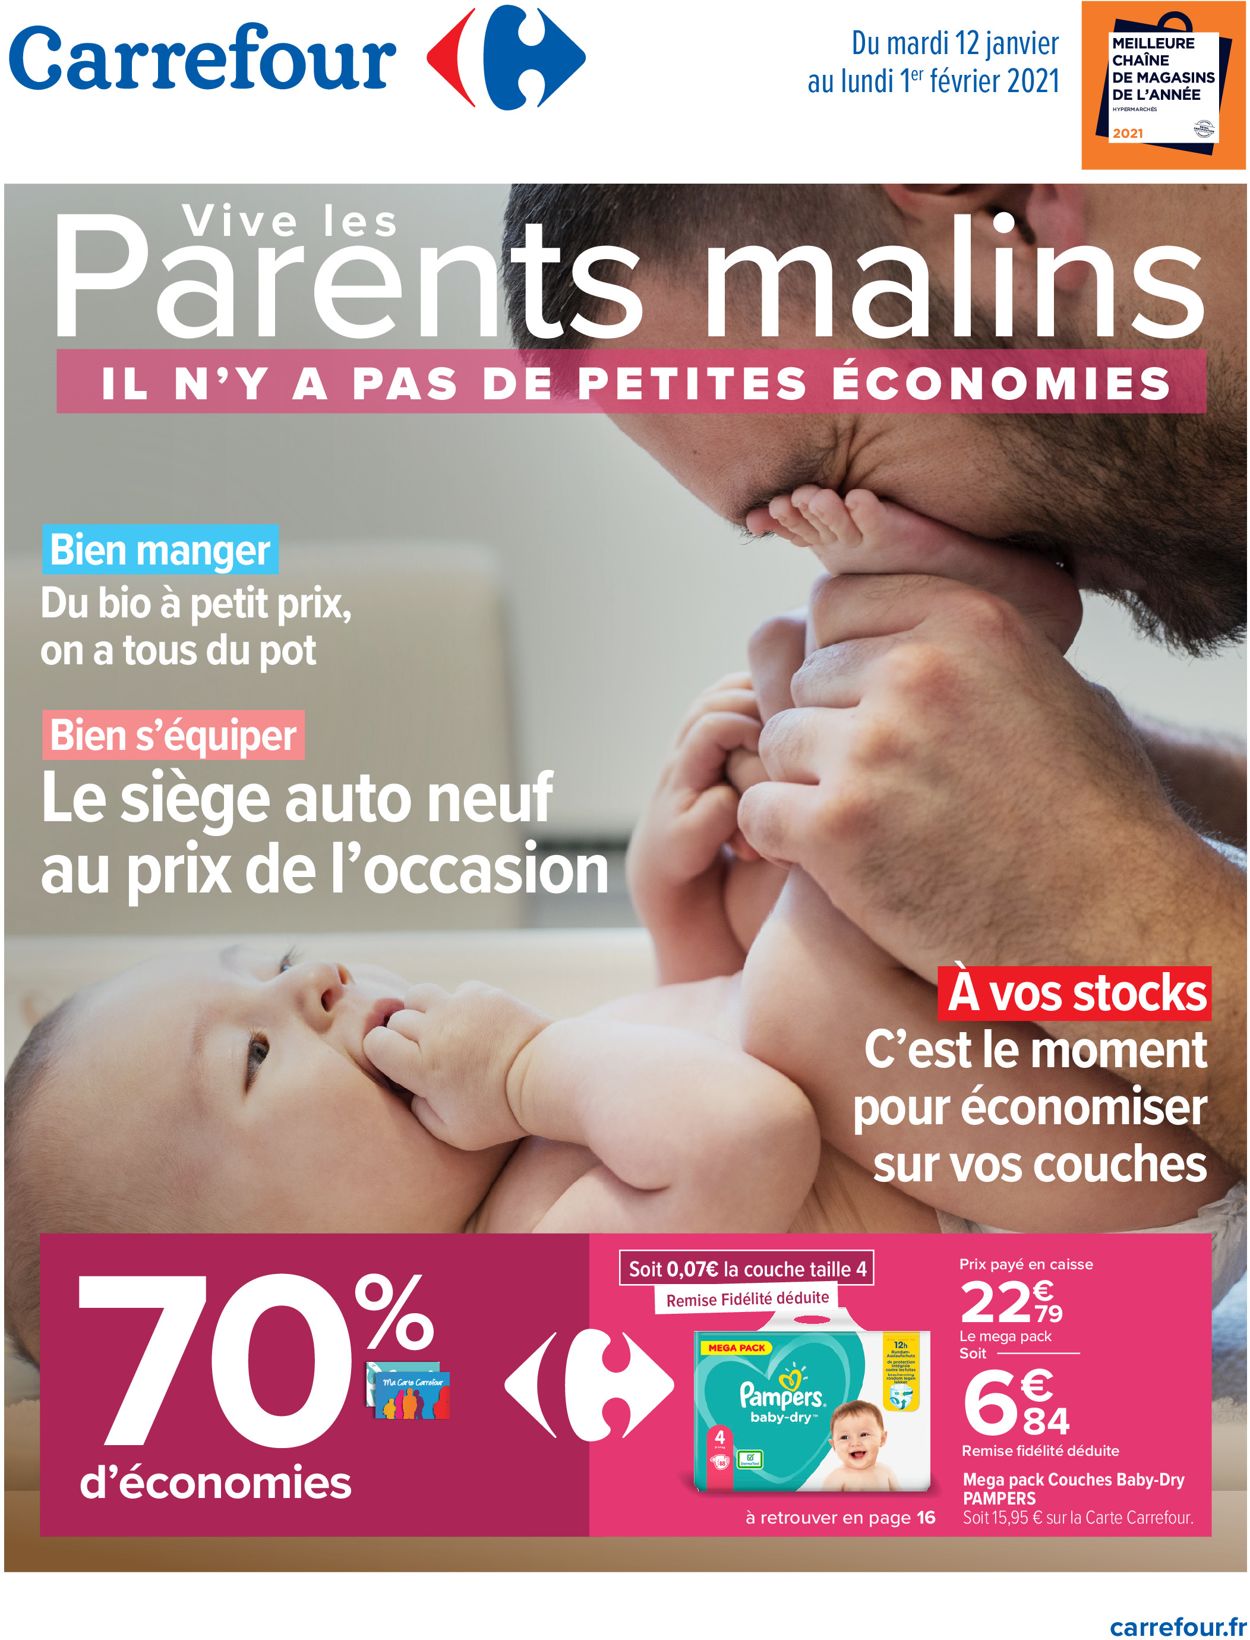 Carrefour Vive les parents malins 2021 Catalogue - 12.01-01.02.2021